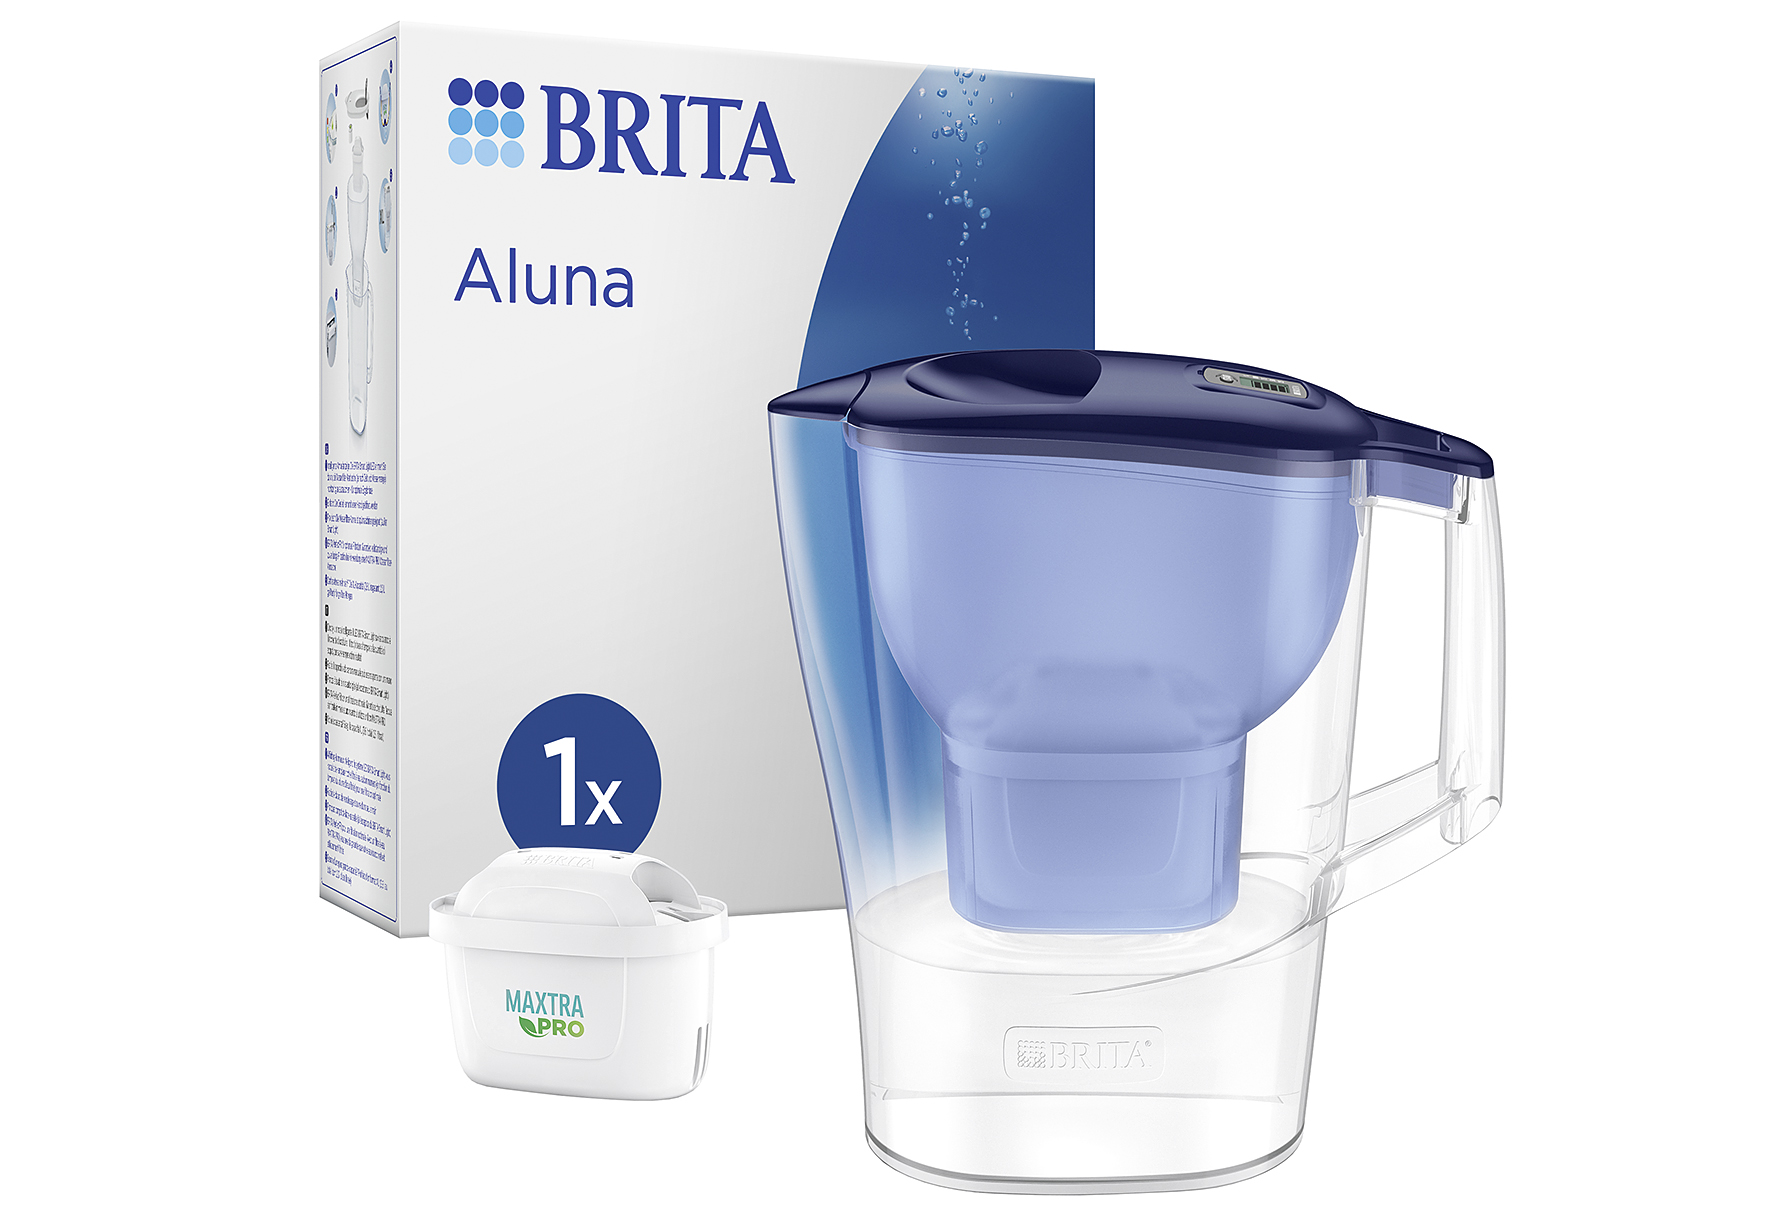 Brita Wasserfilter-Kanne 'Aluna'